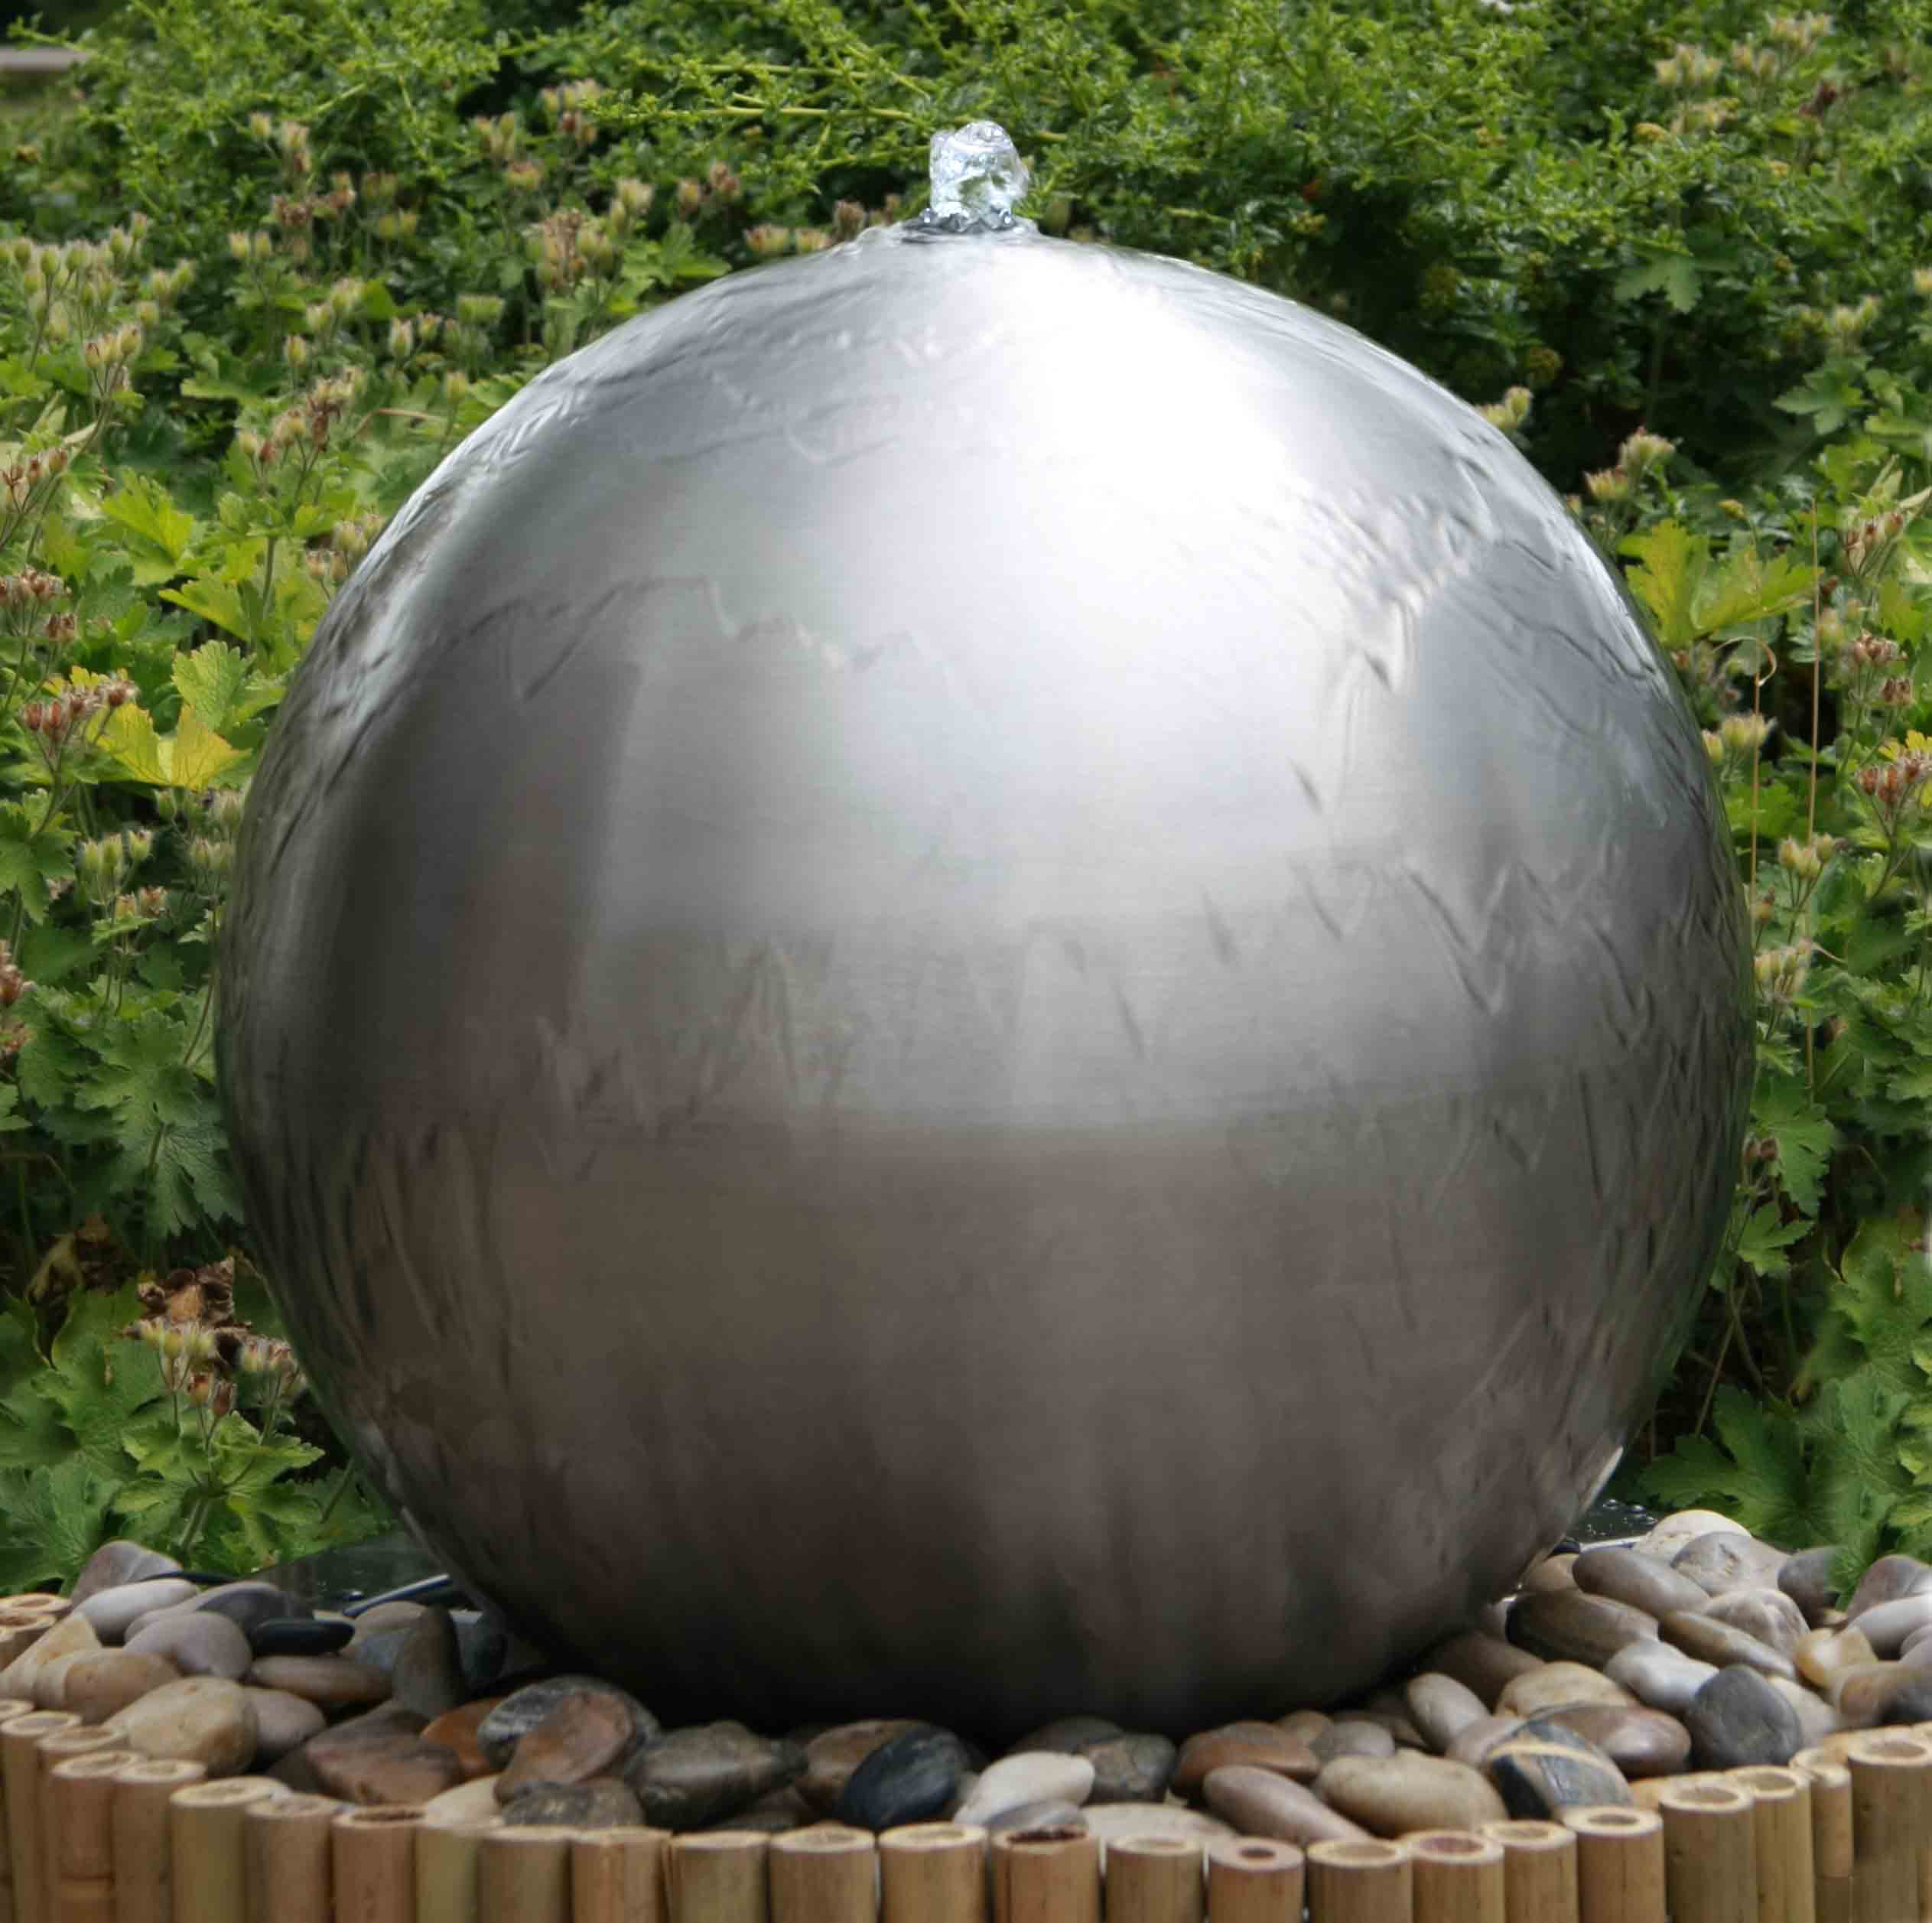 Elemento de acero inoxidable para la fuente de jardín ESB5 grande bola de acero pulido con 48 cm diámetro juguetes de agua Fuente de exterior CLGarden Esfera de acero inoxidable 48cm pulido 